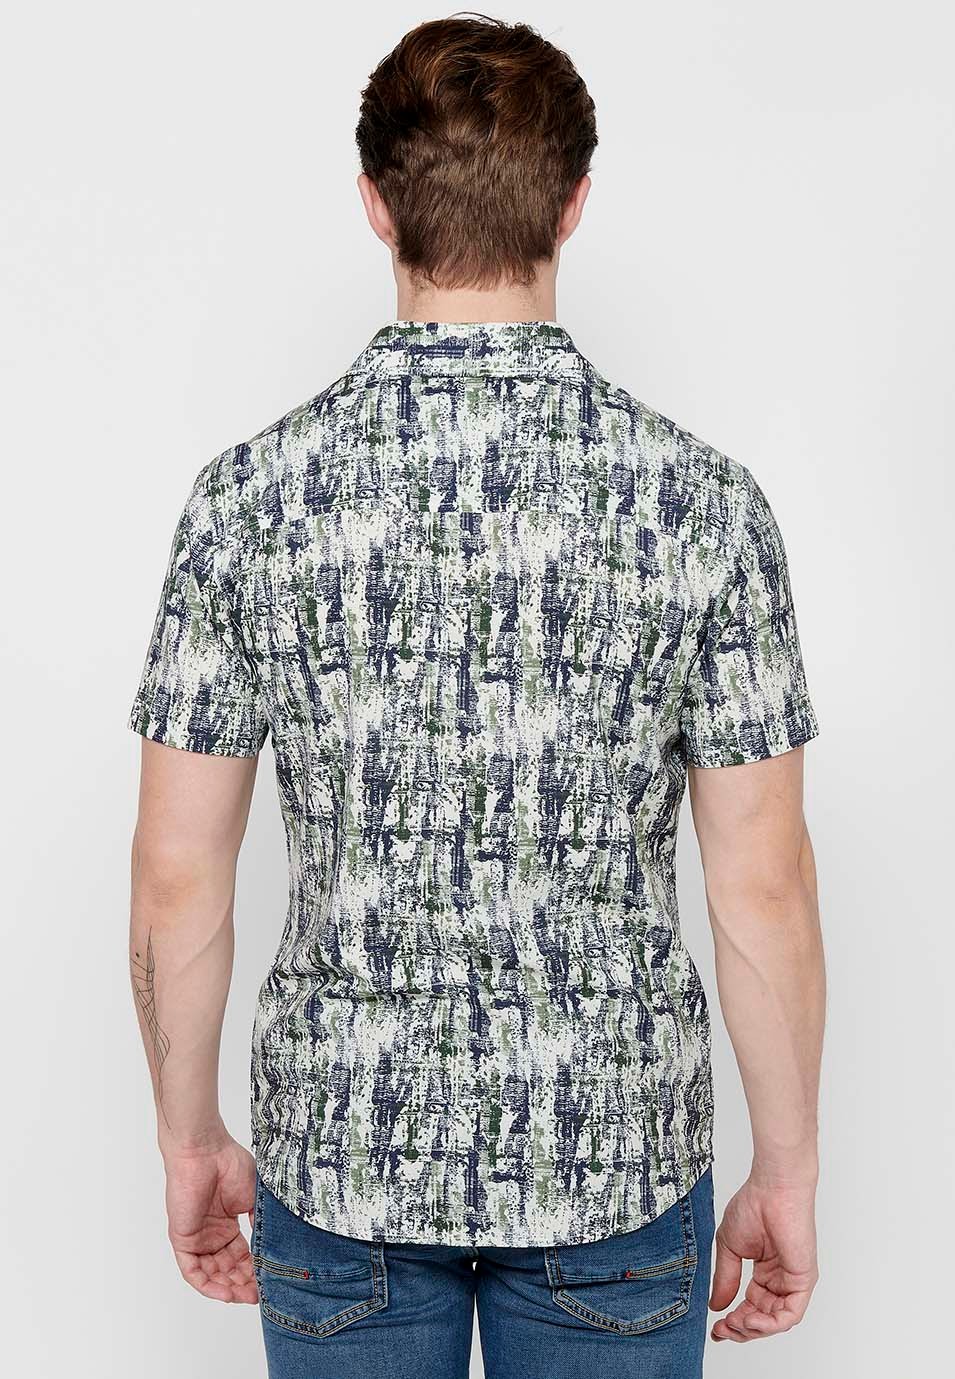 Kurzärmliges, bedrucktes Herrenhemd in Khaki-Farbe mit Knopfverschluss vorne